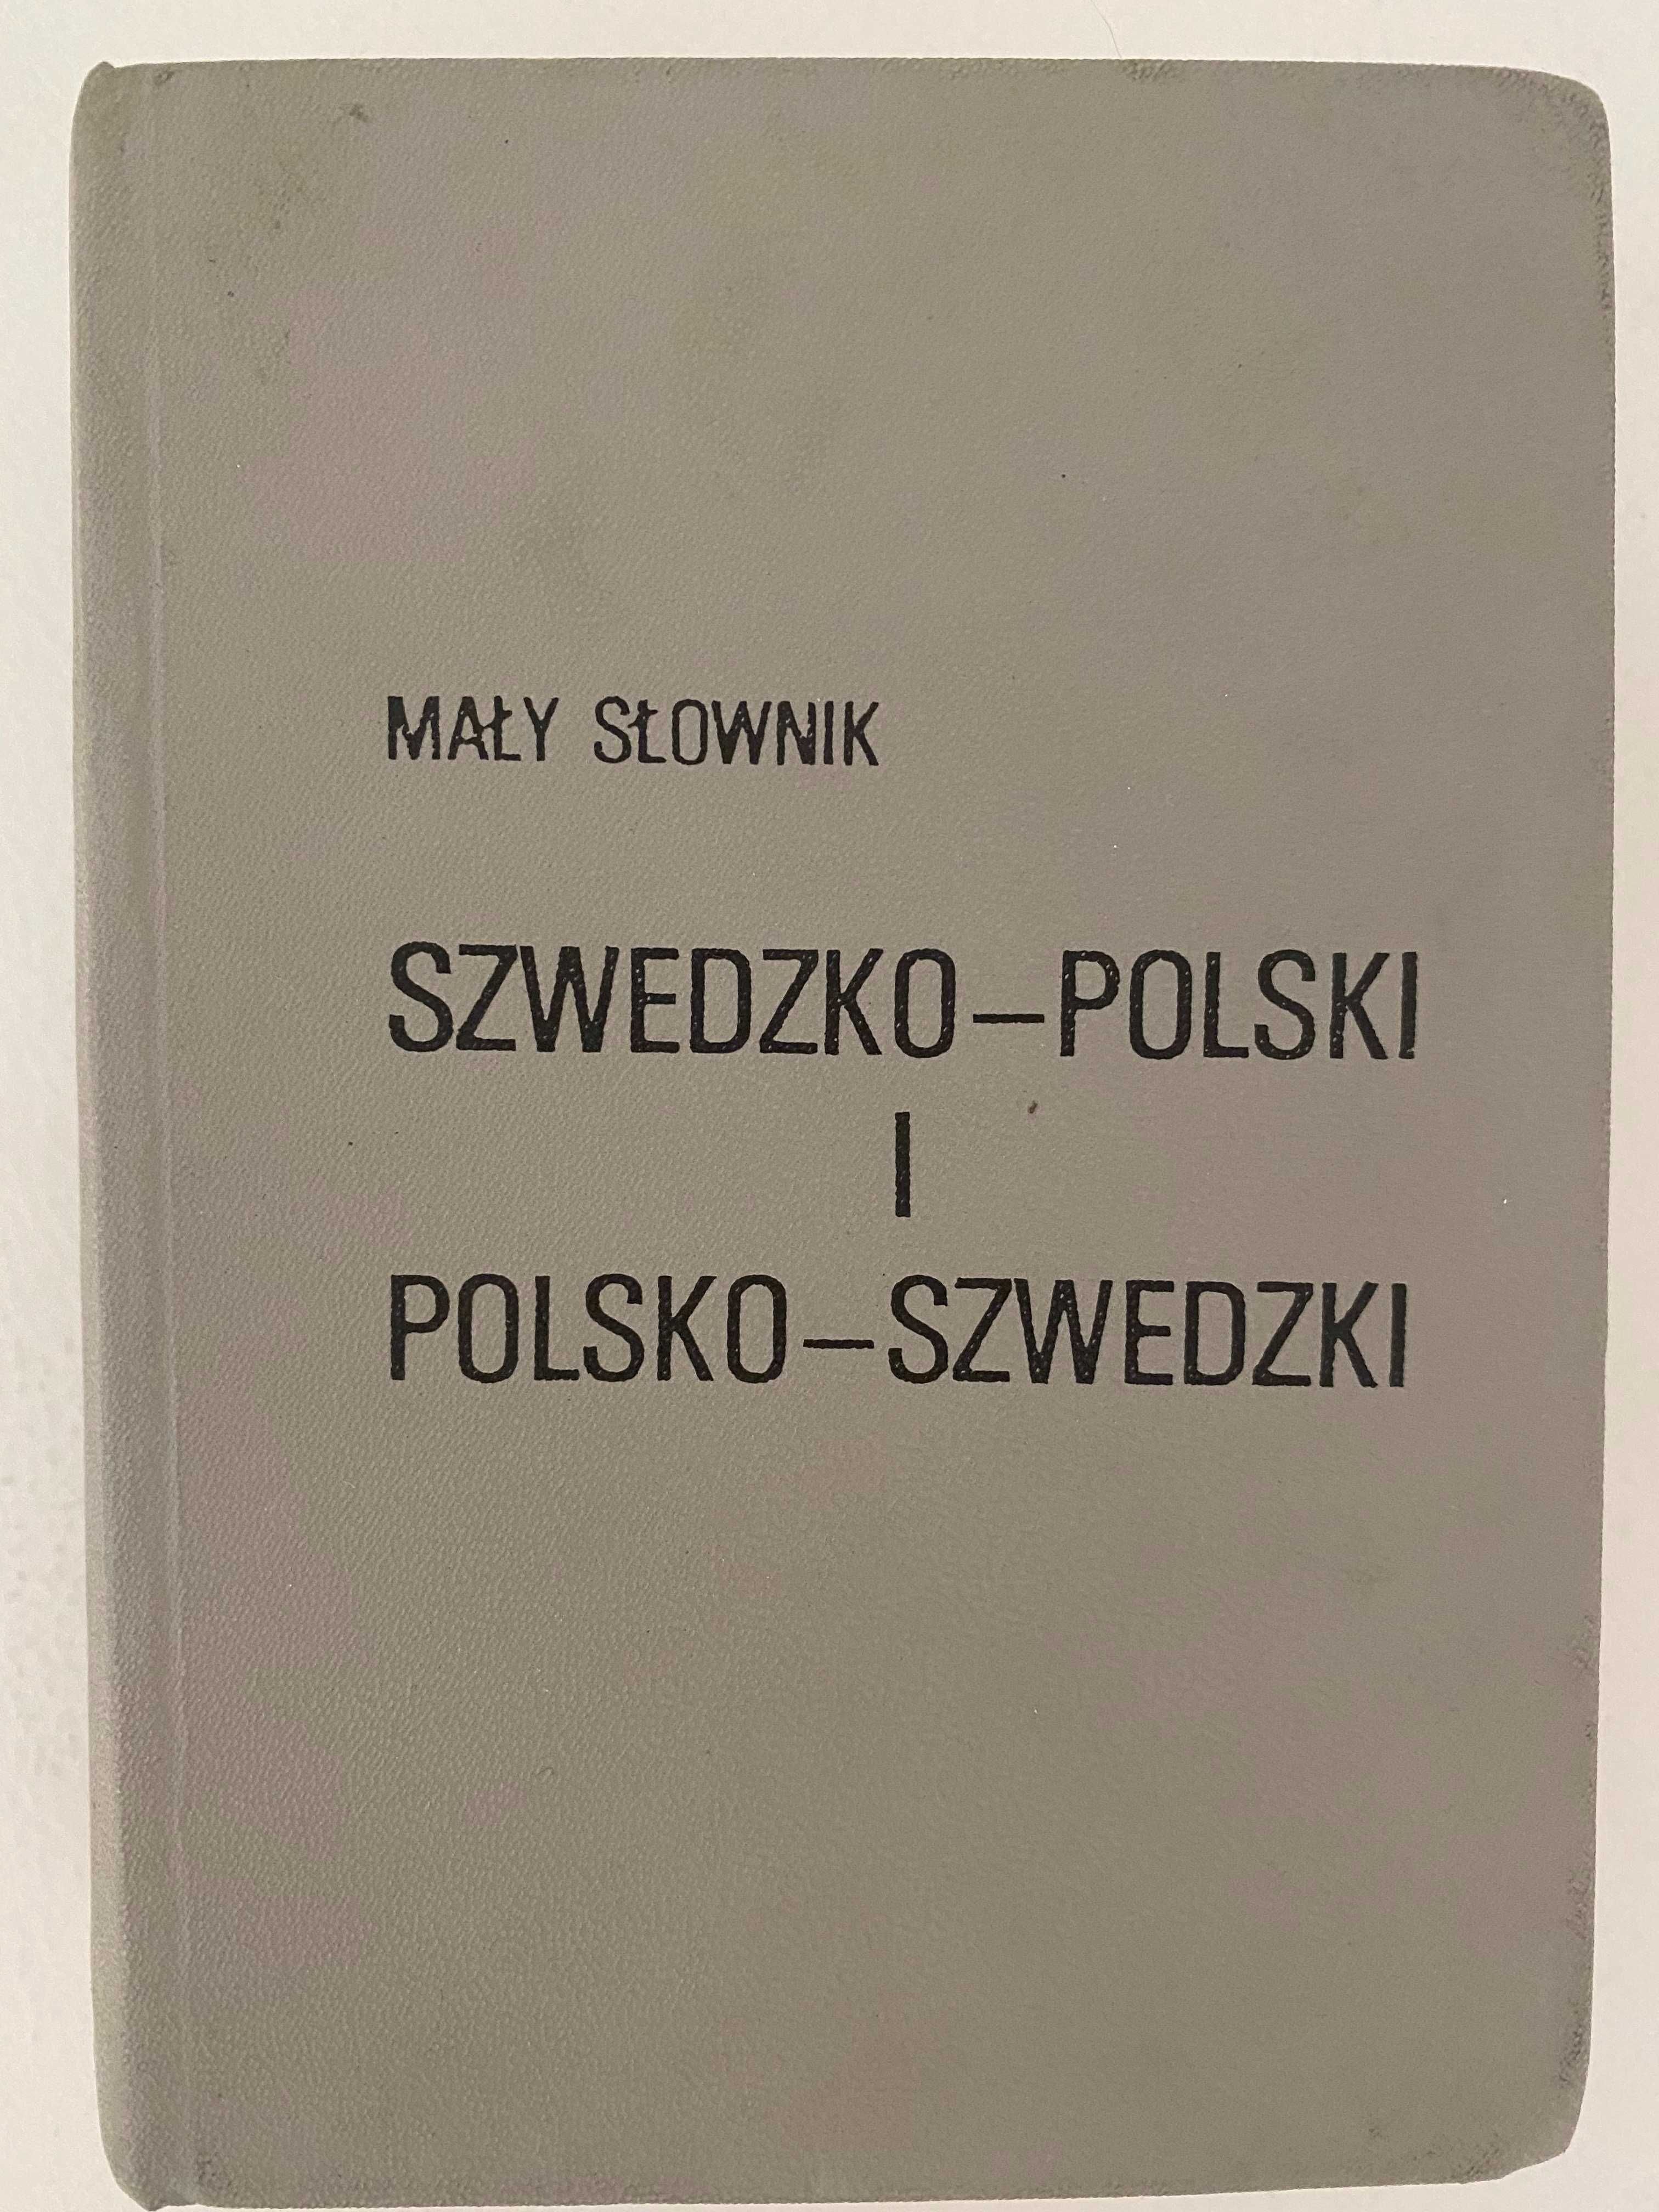 Mały słownik szwedzko-polski polsko-szwedzki